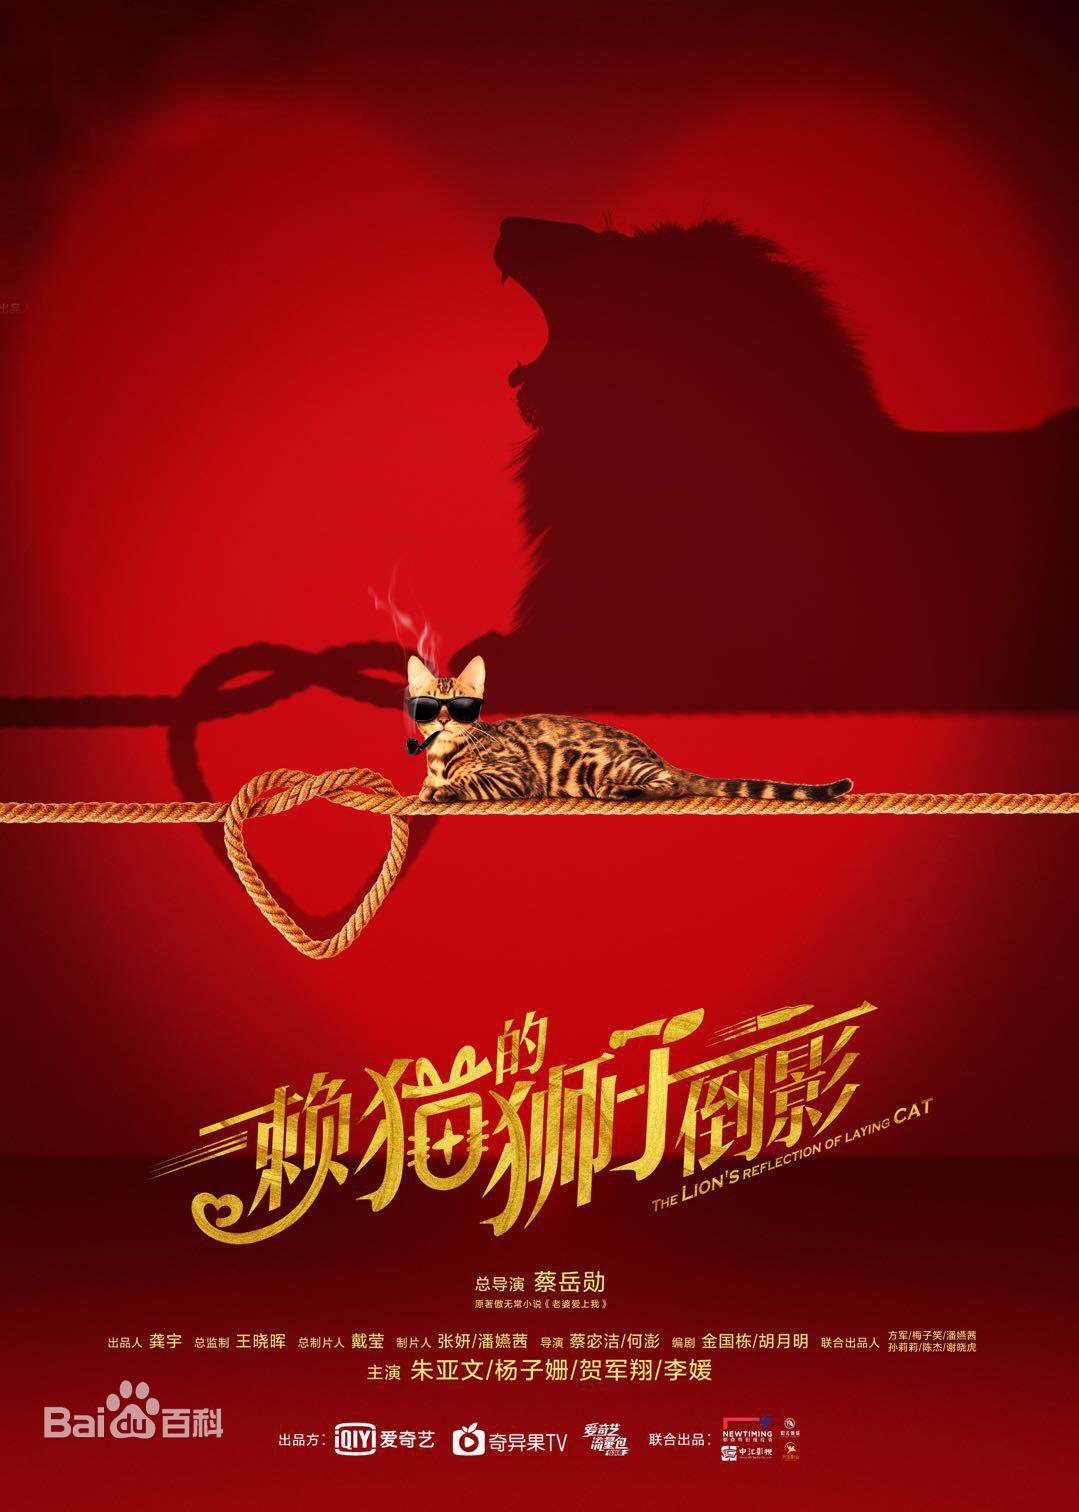 《赖猫的狮子倒影》朱亚文、杨子姗、贺军翔、主演的都市情感剧